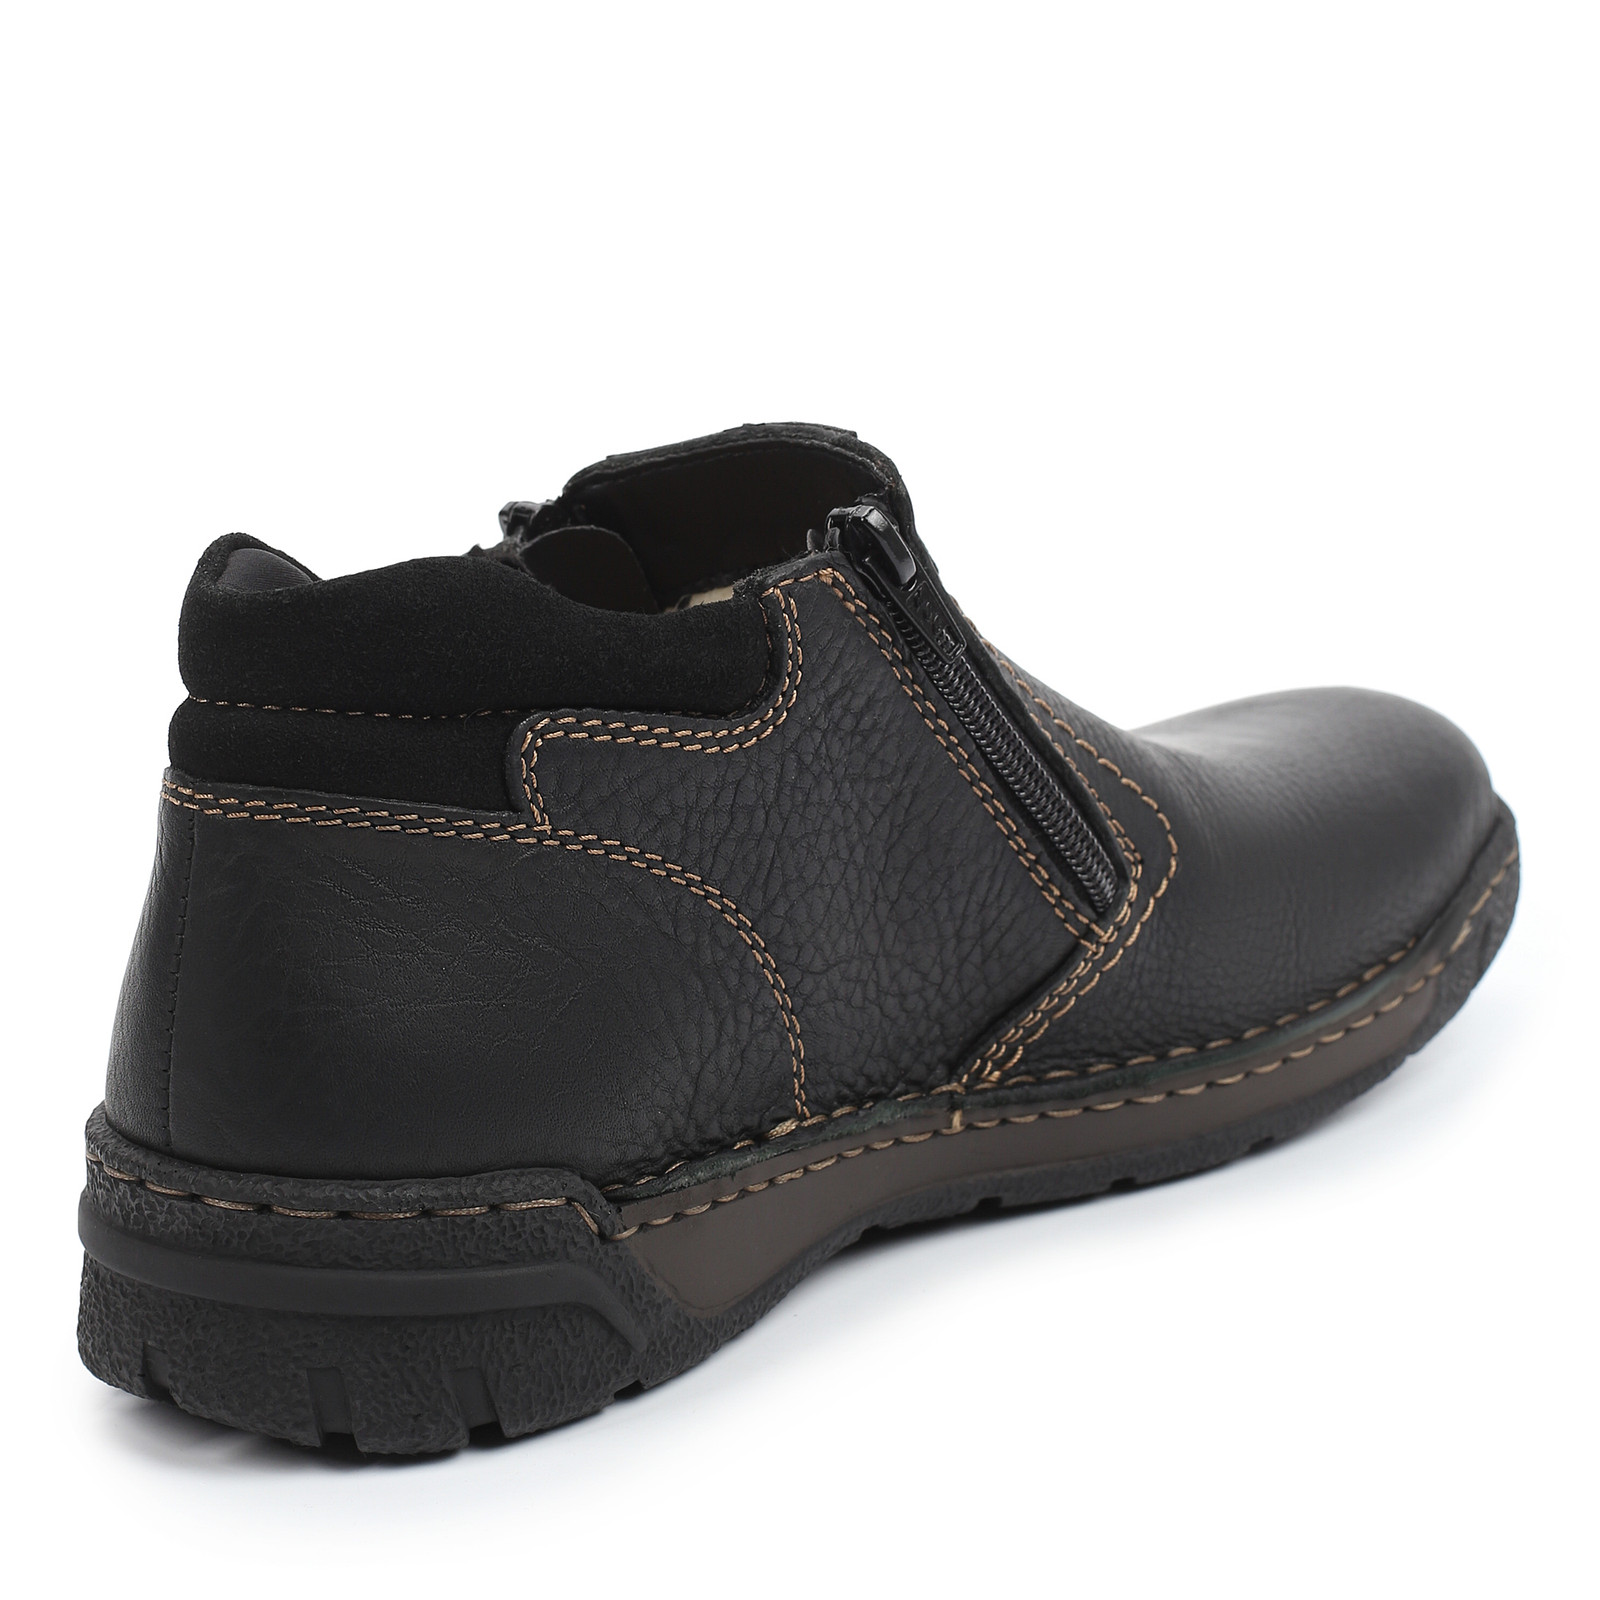 Ботинки Rieker мужские B0392-00 купить в официальном интернет-магазине вМоскве